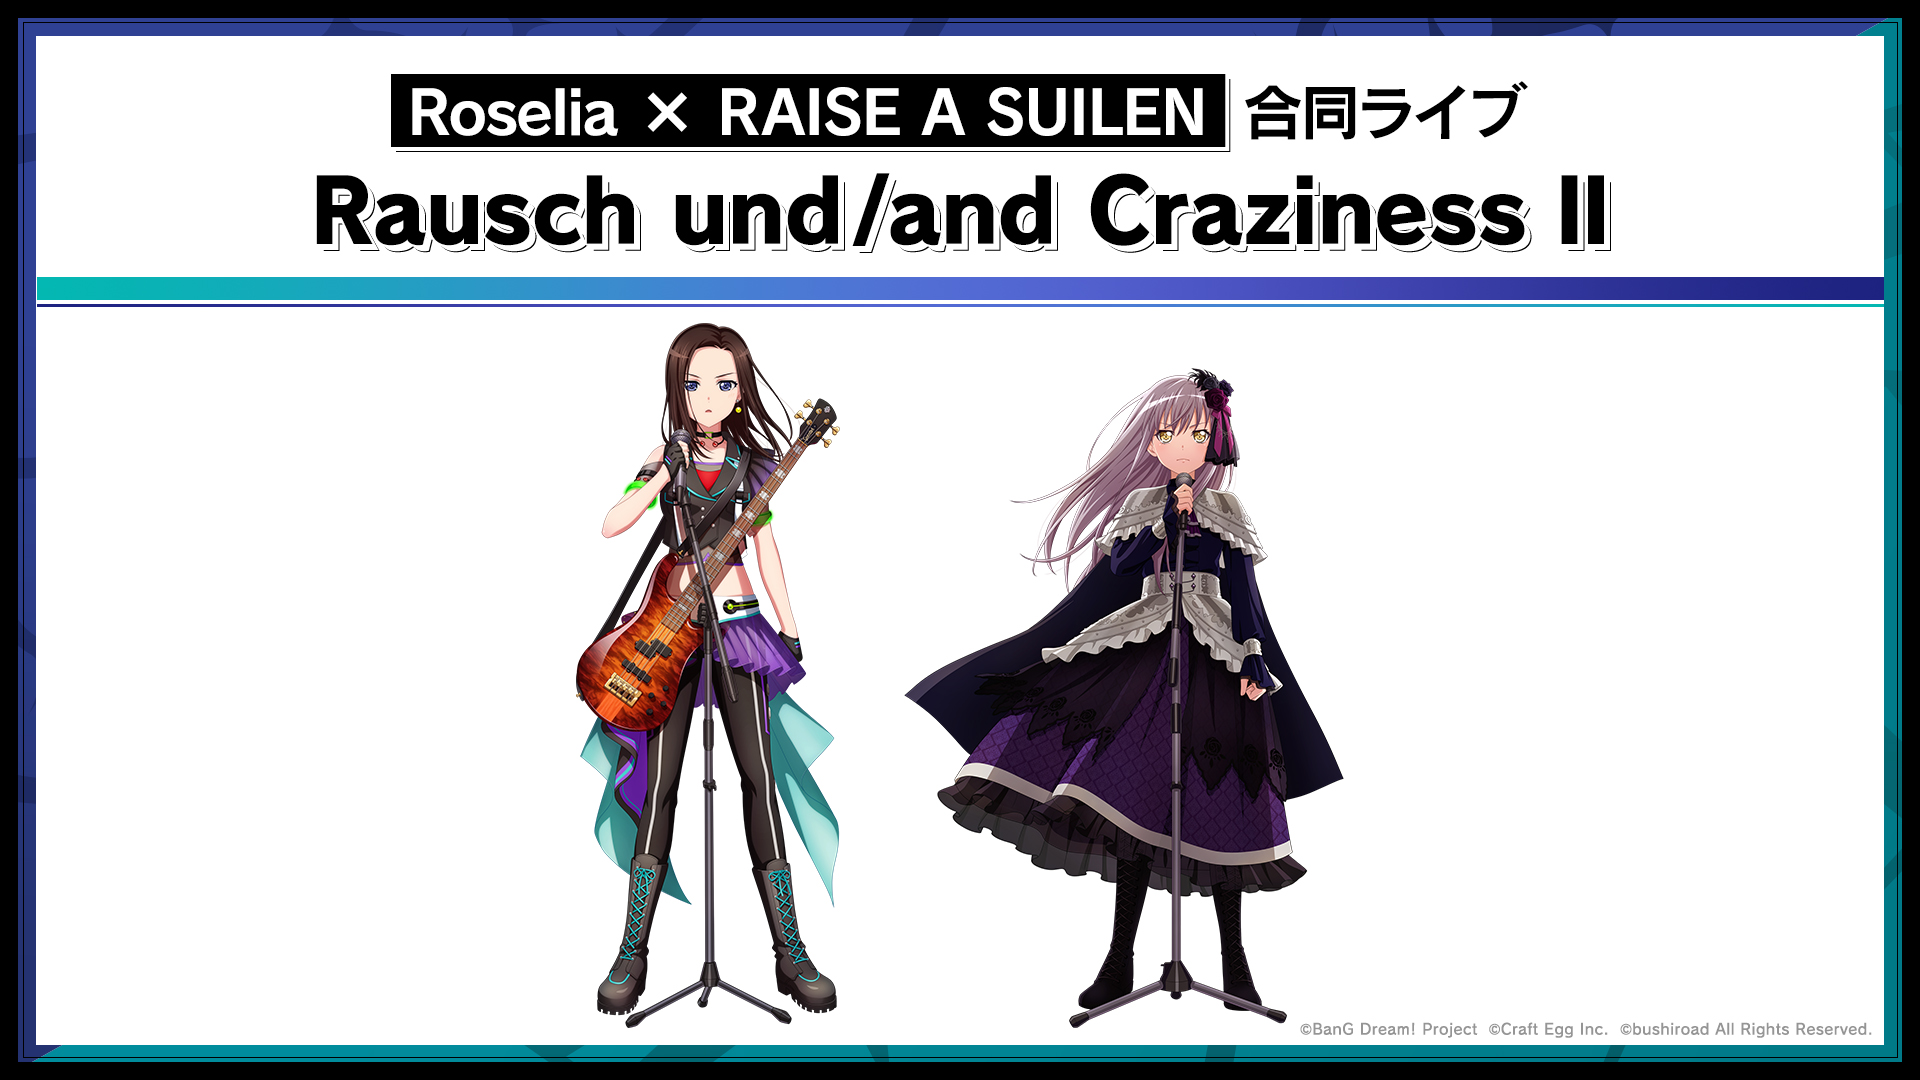 Rausch und/and Craziness II